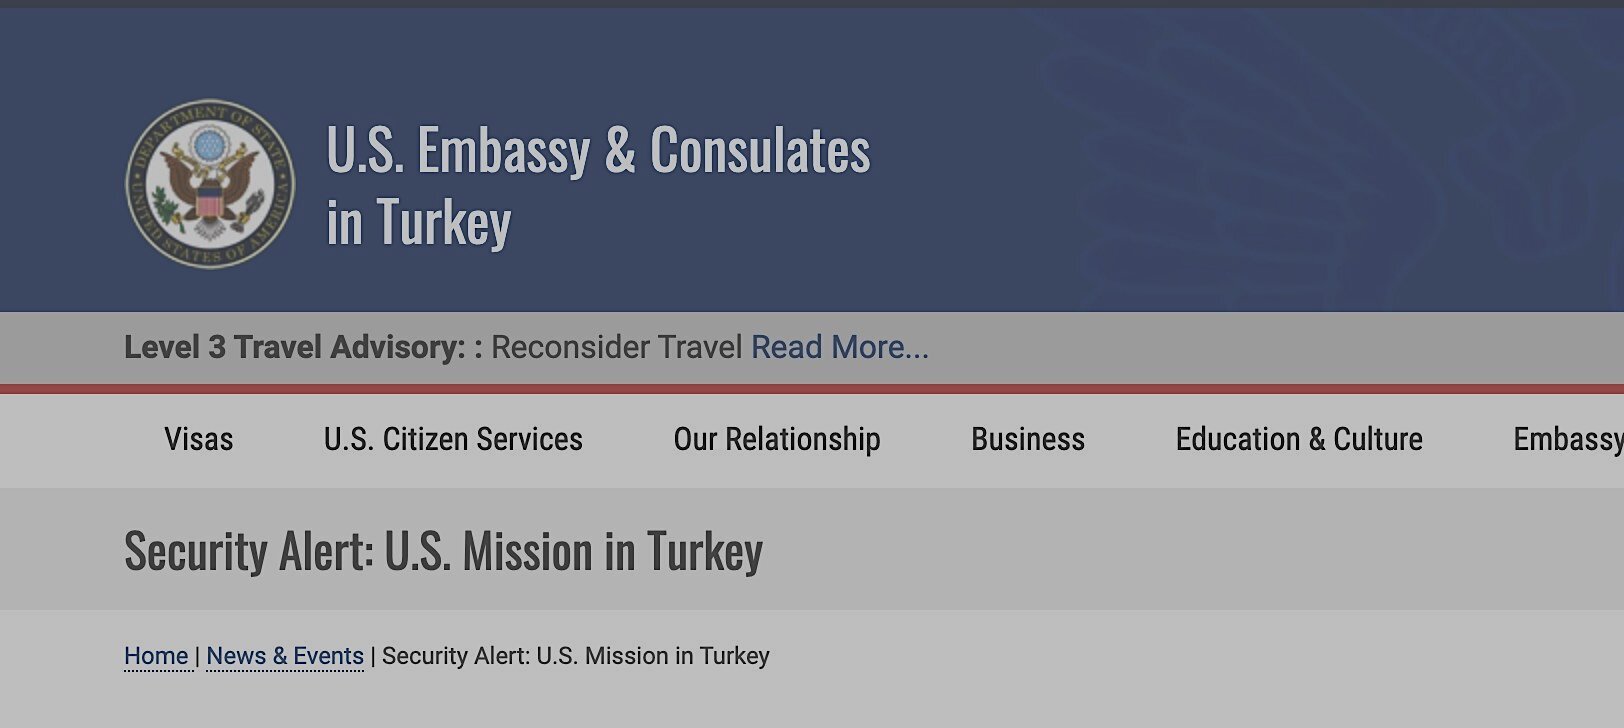 Προειδοποίηση για όλους τους Αμερικανούς πολίτες στην Τουρκία: Λίγο πριν τις εκλογές στις ΗΠΑ θα προβούν σε επιθέσεις εναντίον τους εκεί!